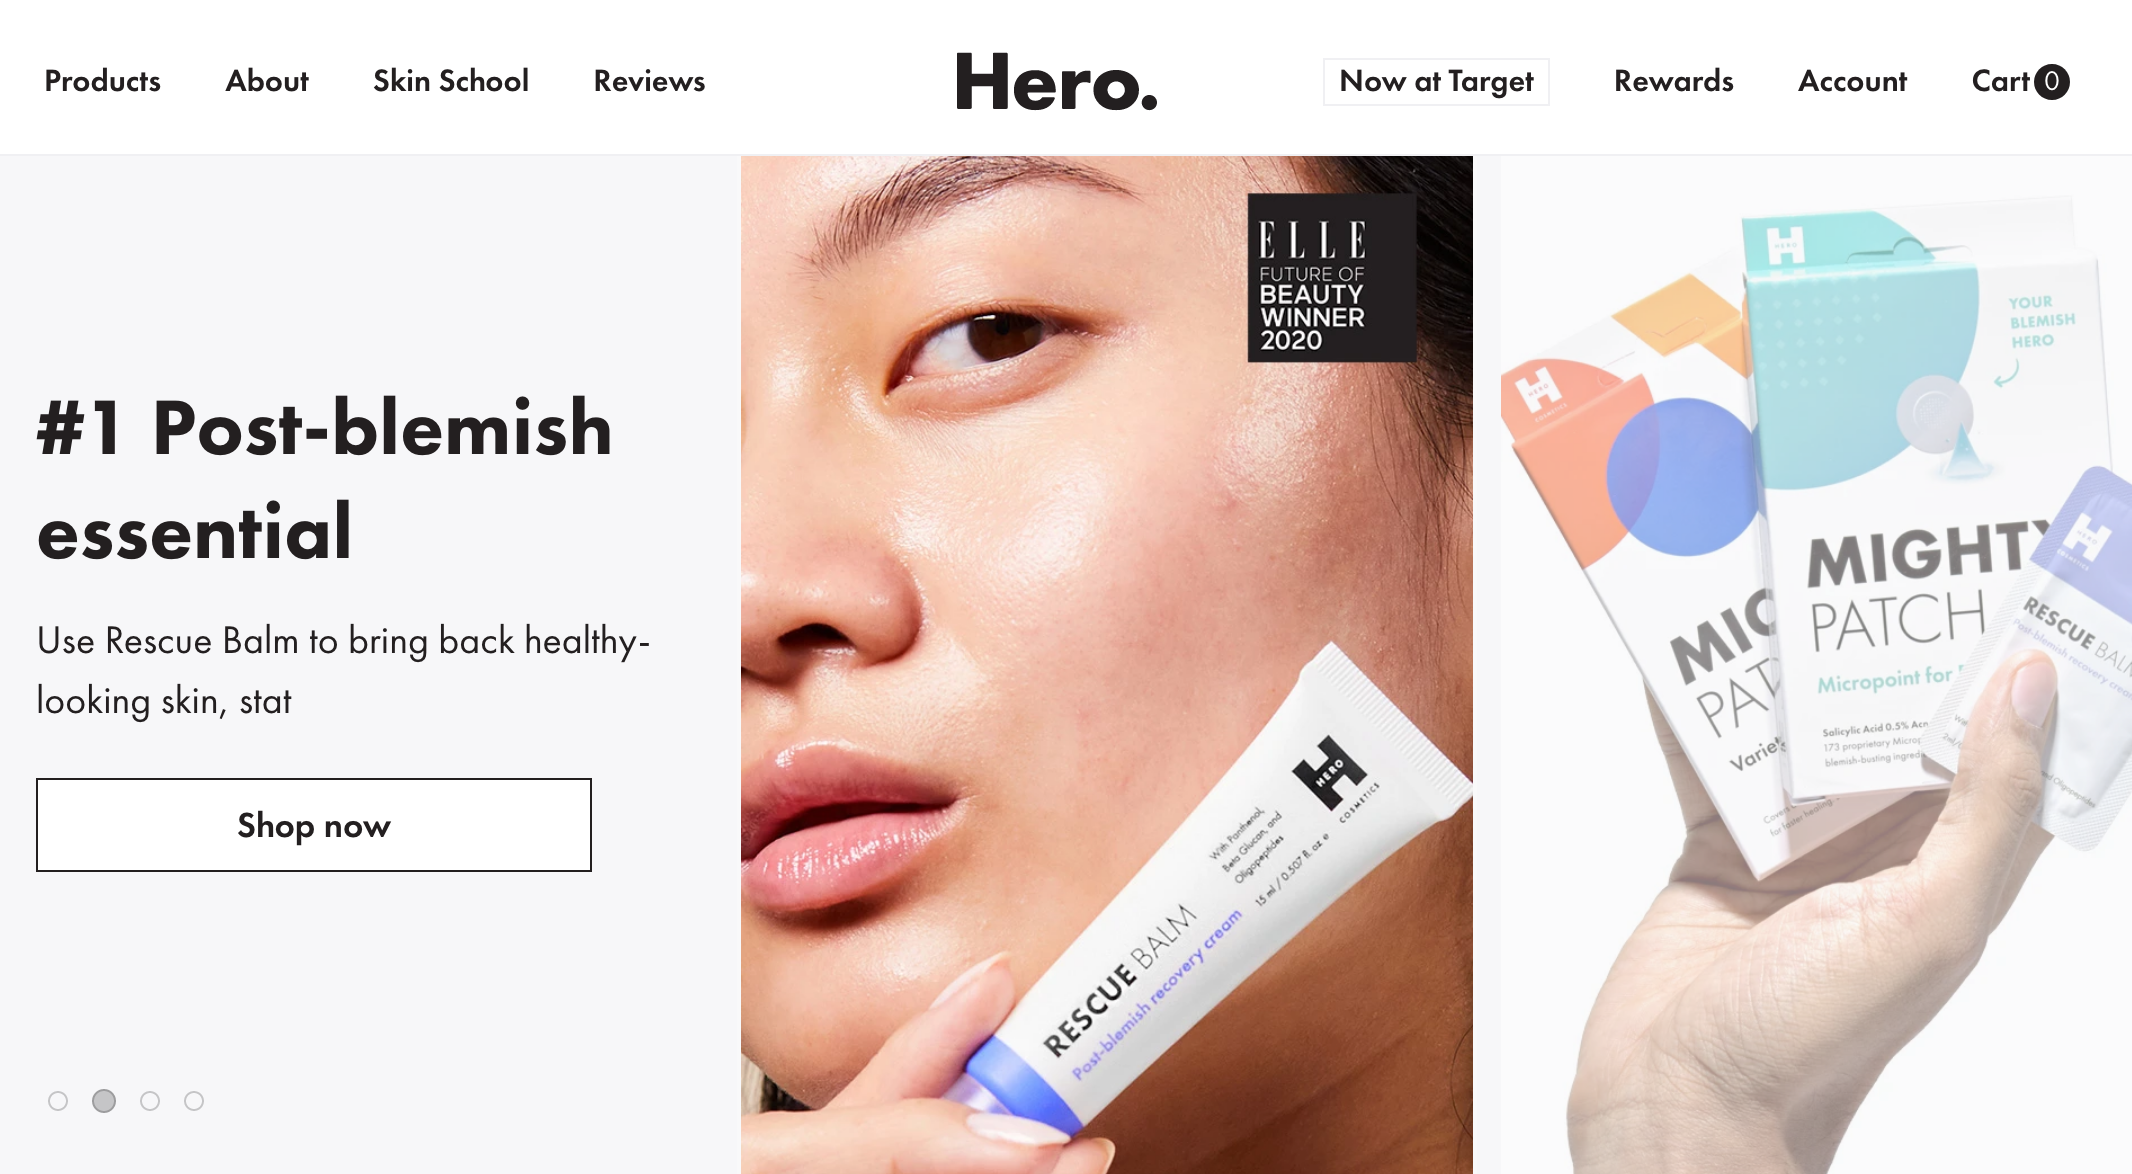 美国痤疮护理创业品牌 Hero Cosmetics 首次引入外部投资，去年销售额增长300%